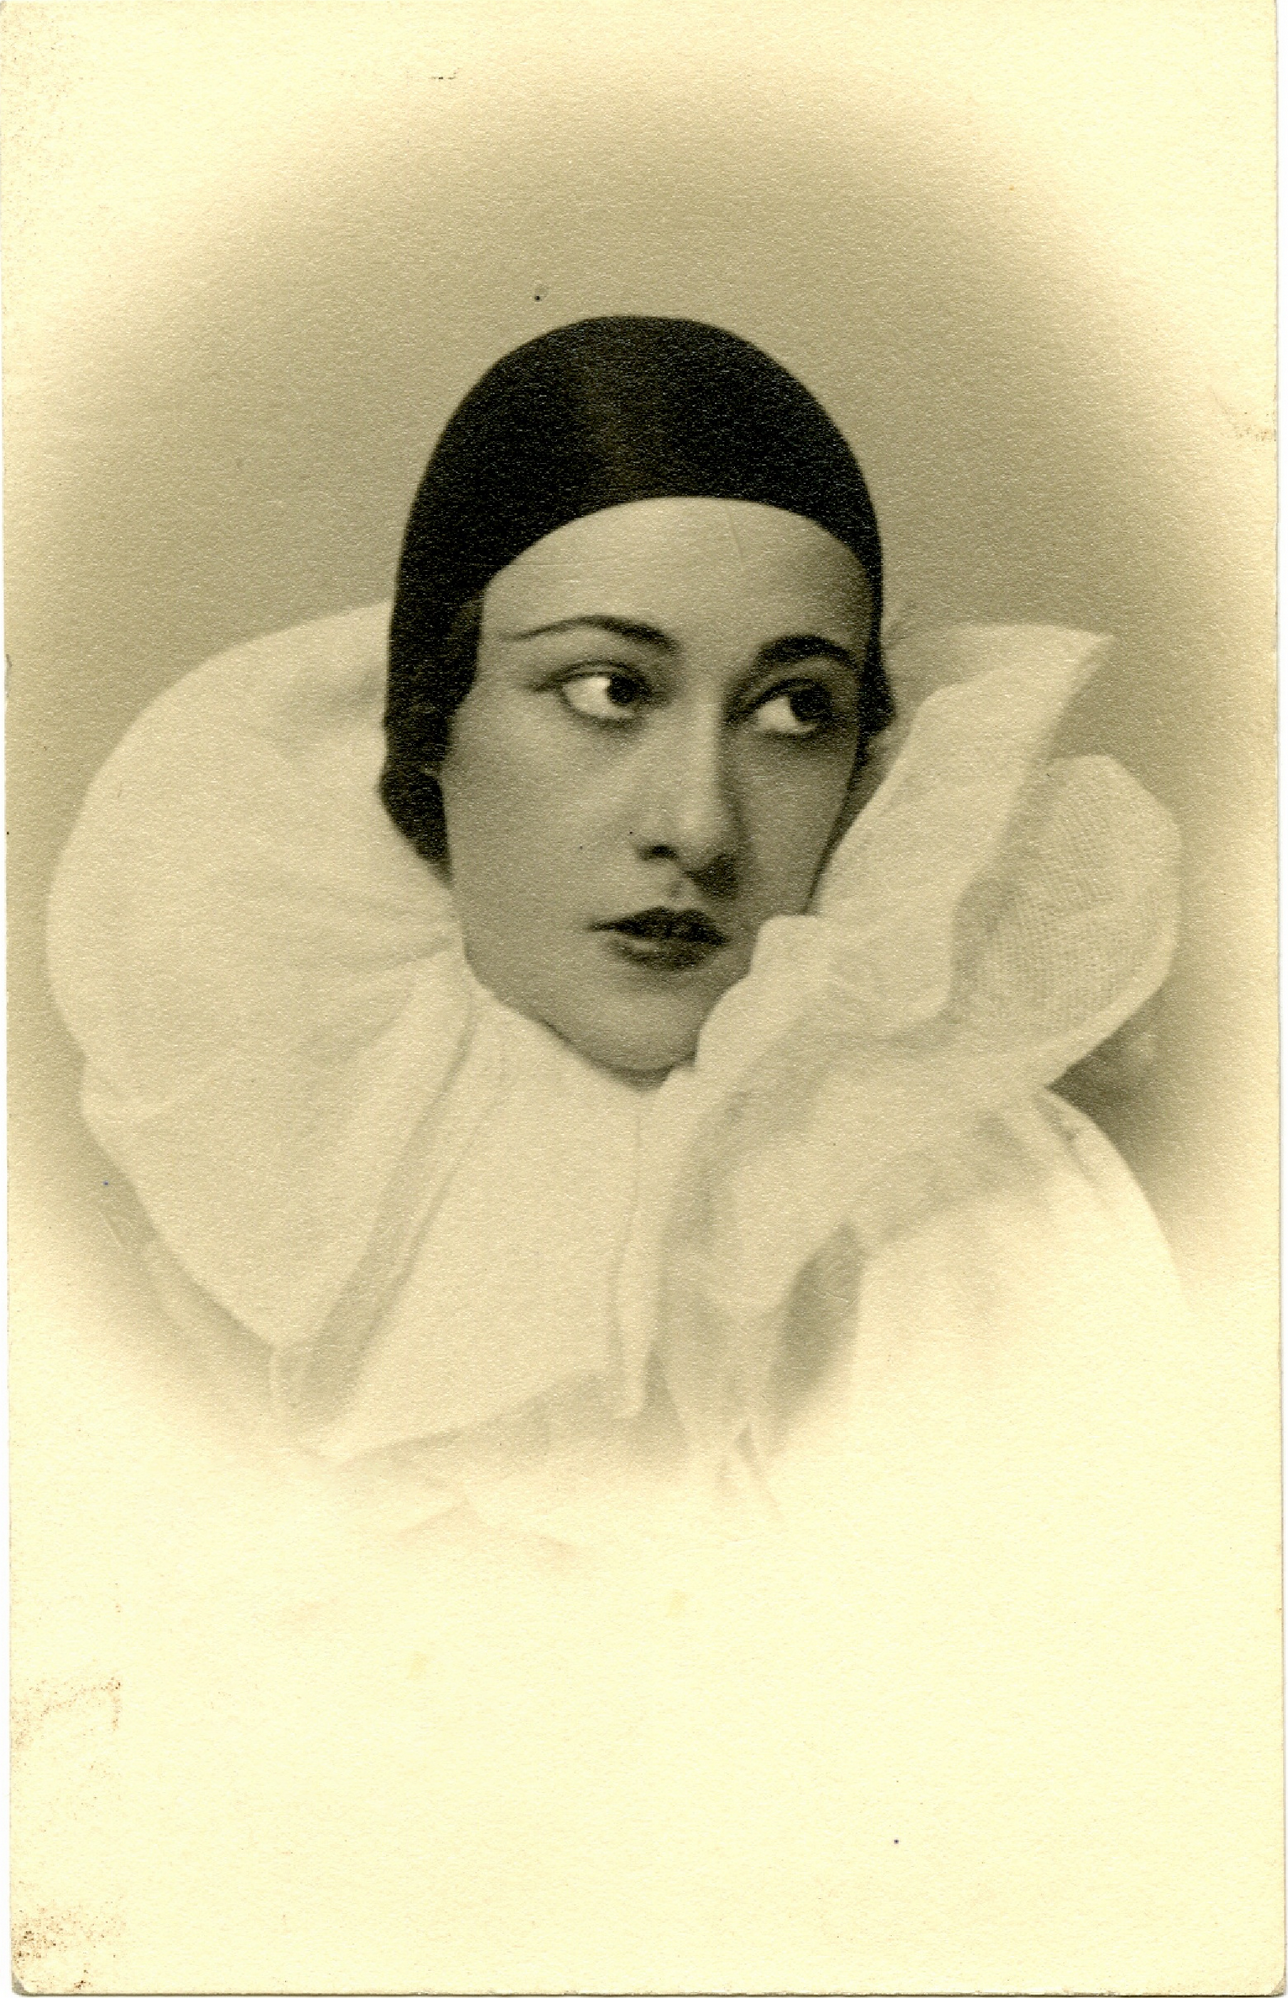 Giannina Censi in costume da Pierrot in Il Carillon Magico di Pick Mangiagalli al teatro San Carlo di Napoli, febbraio 1933 